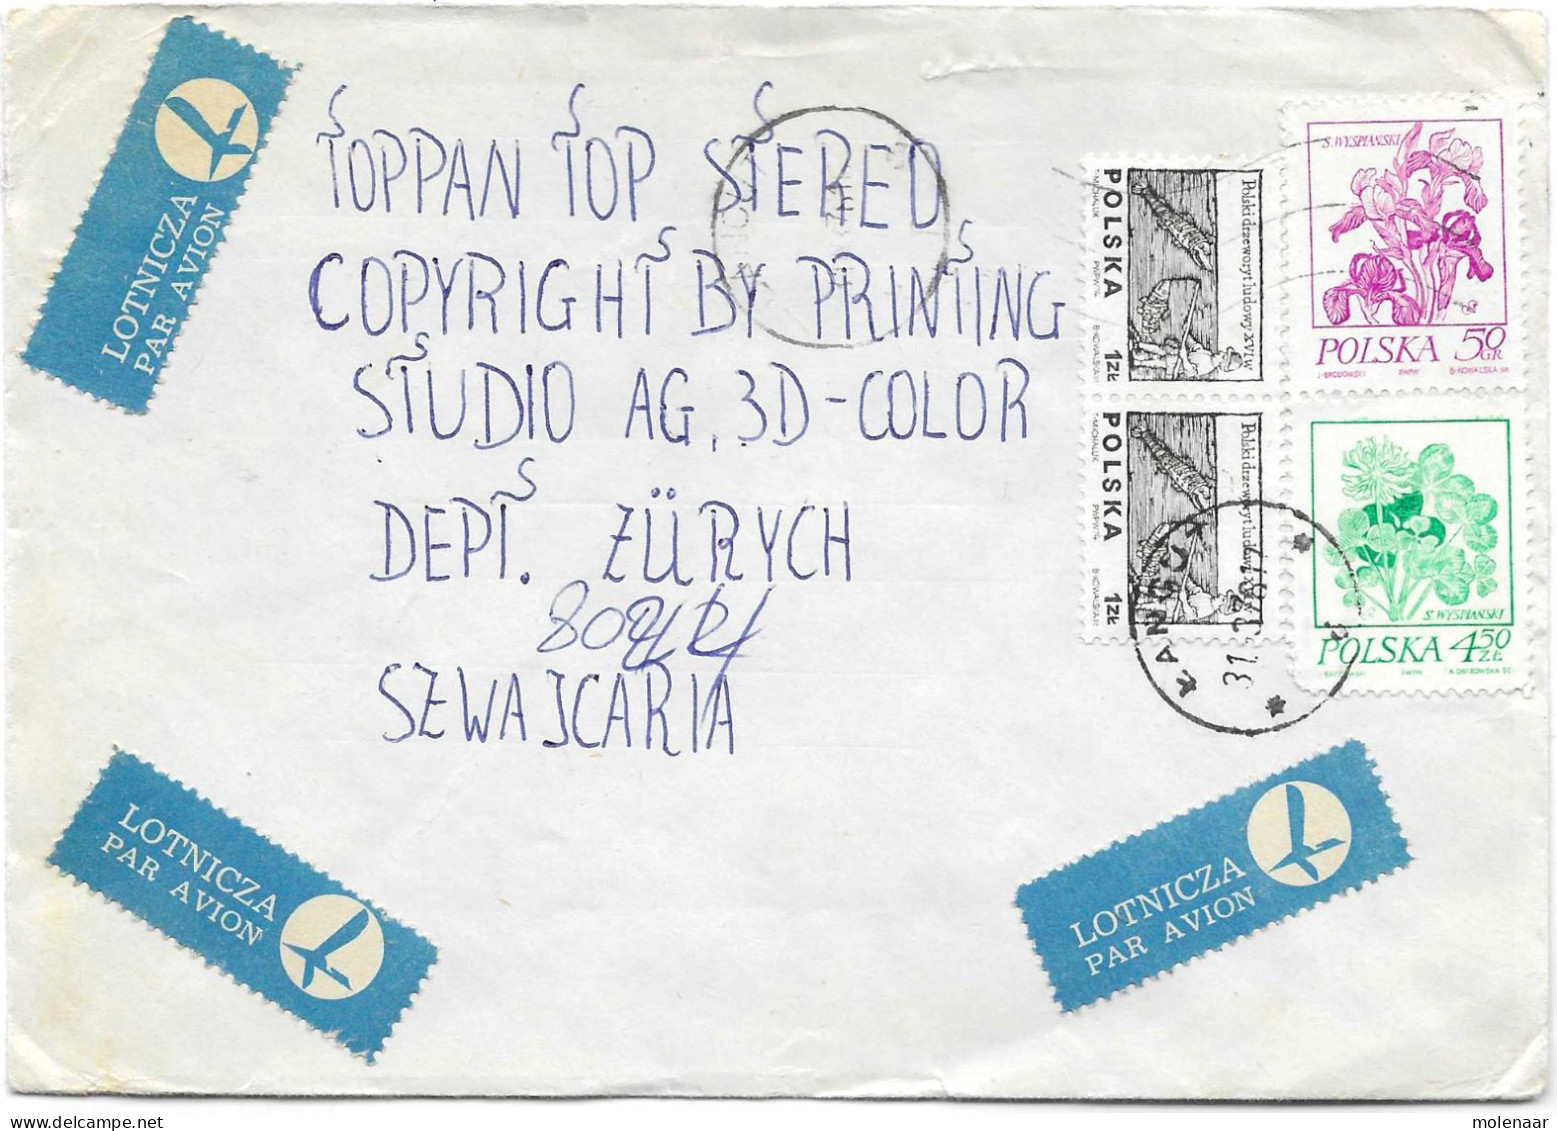 Postzegels > Europa > Polen > 1944-.... Republiek > 1971-80 > Brief Met 4 Postzegels (17132) - Storia Postale